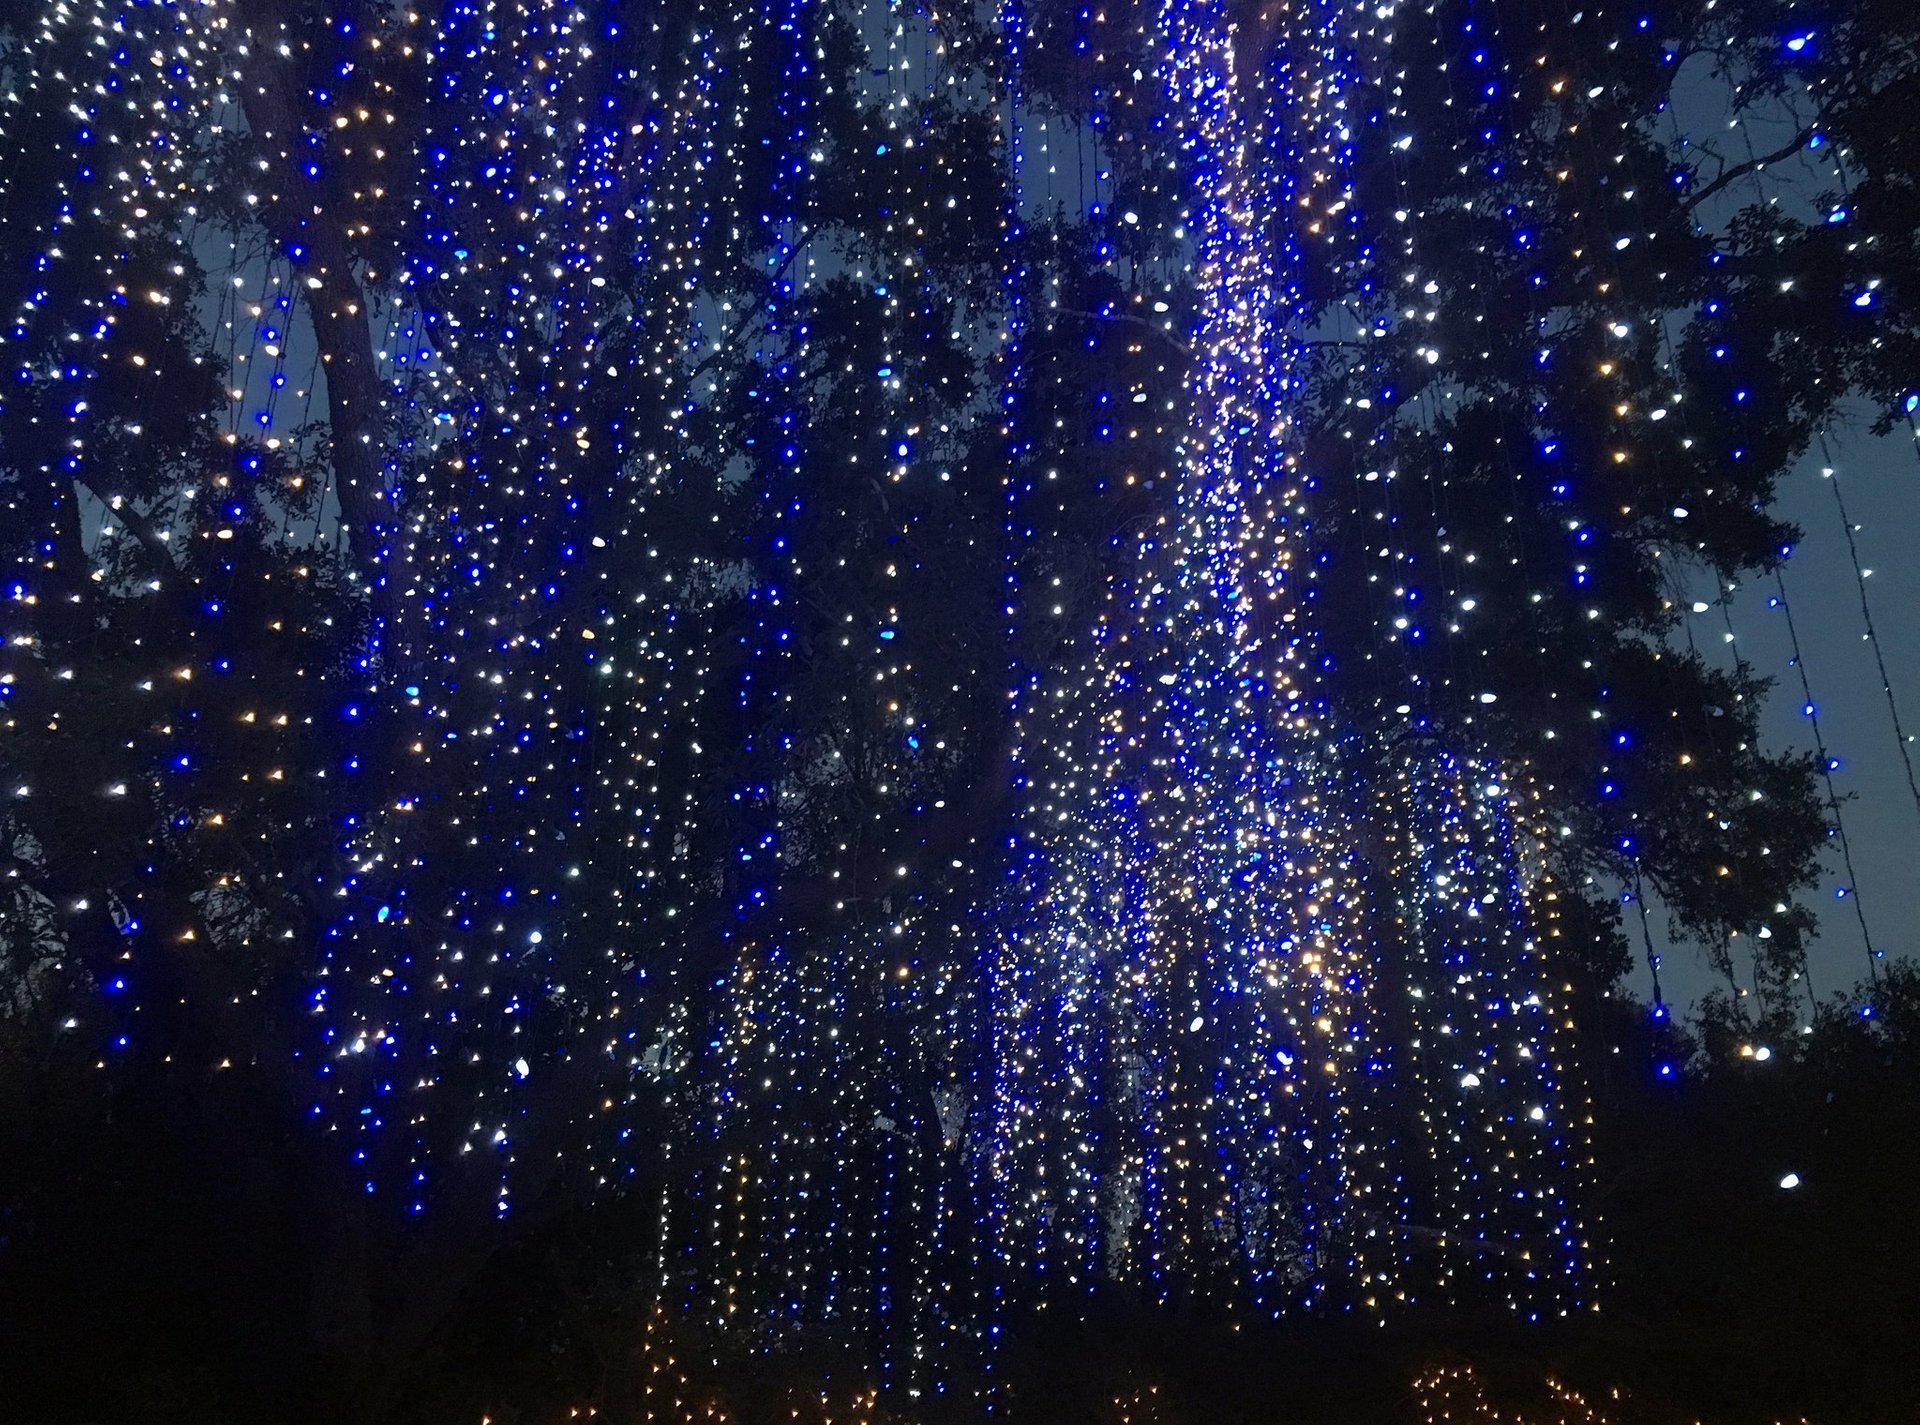 Christmas Lights Huntsville Al 2021